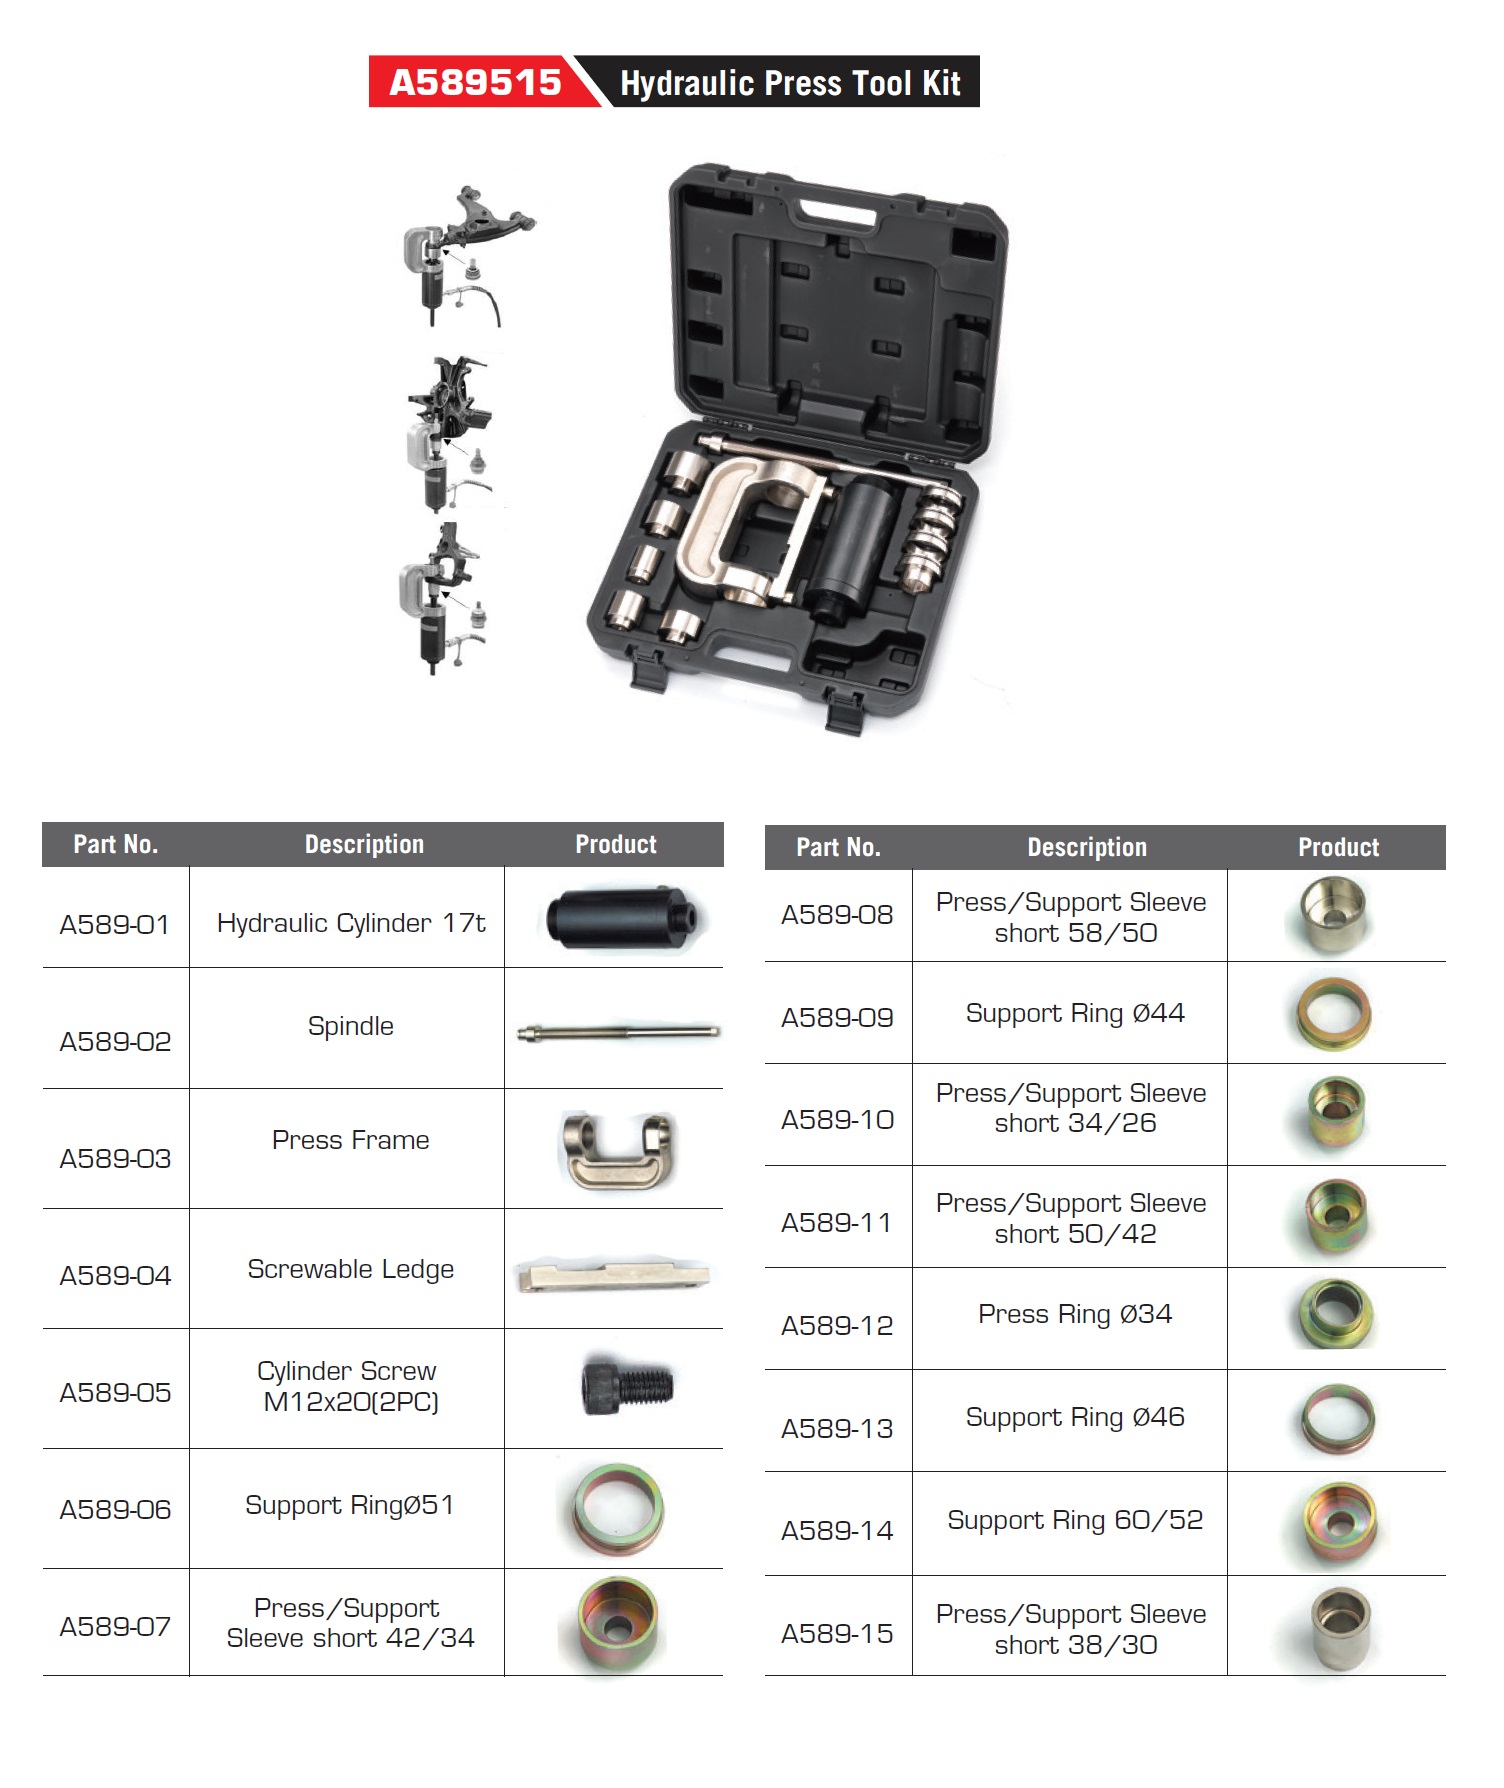 A589515 Hydraulic Press Tool Kit